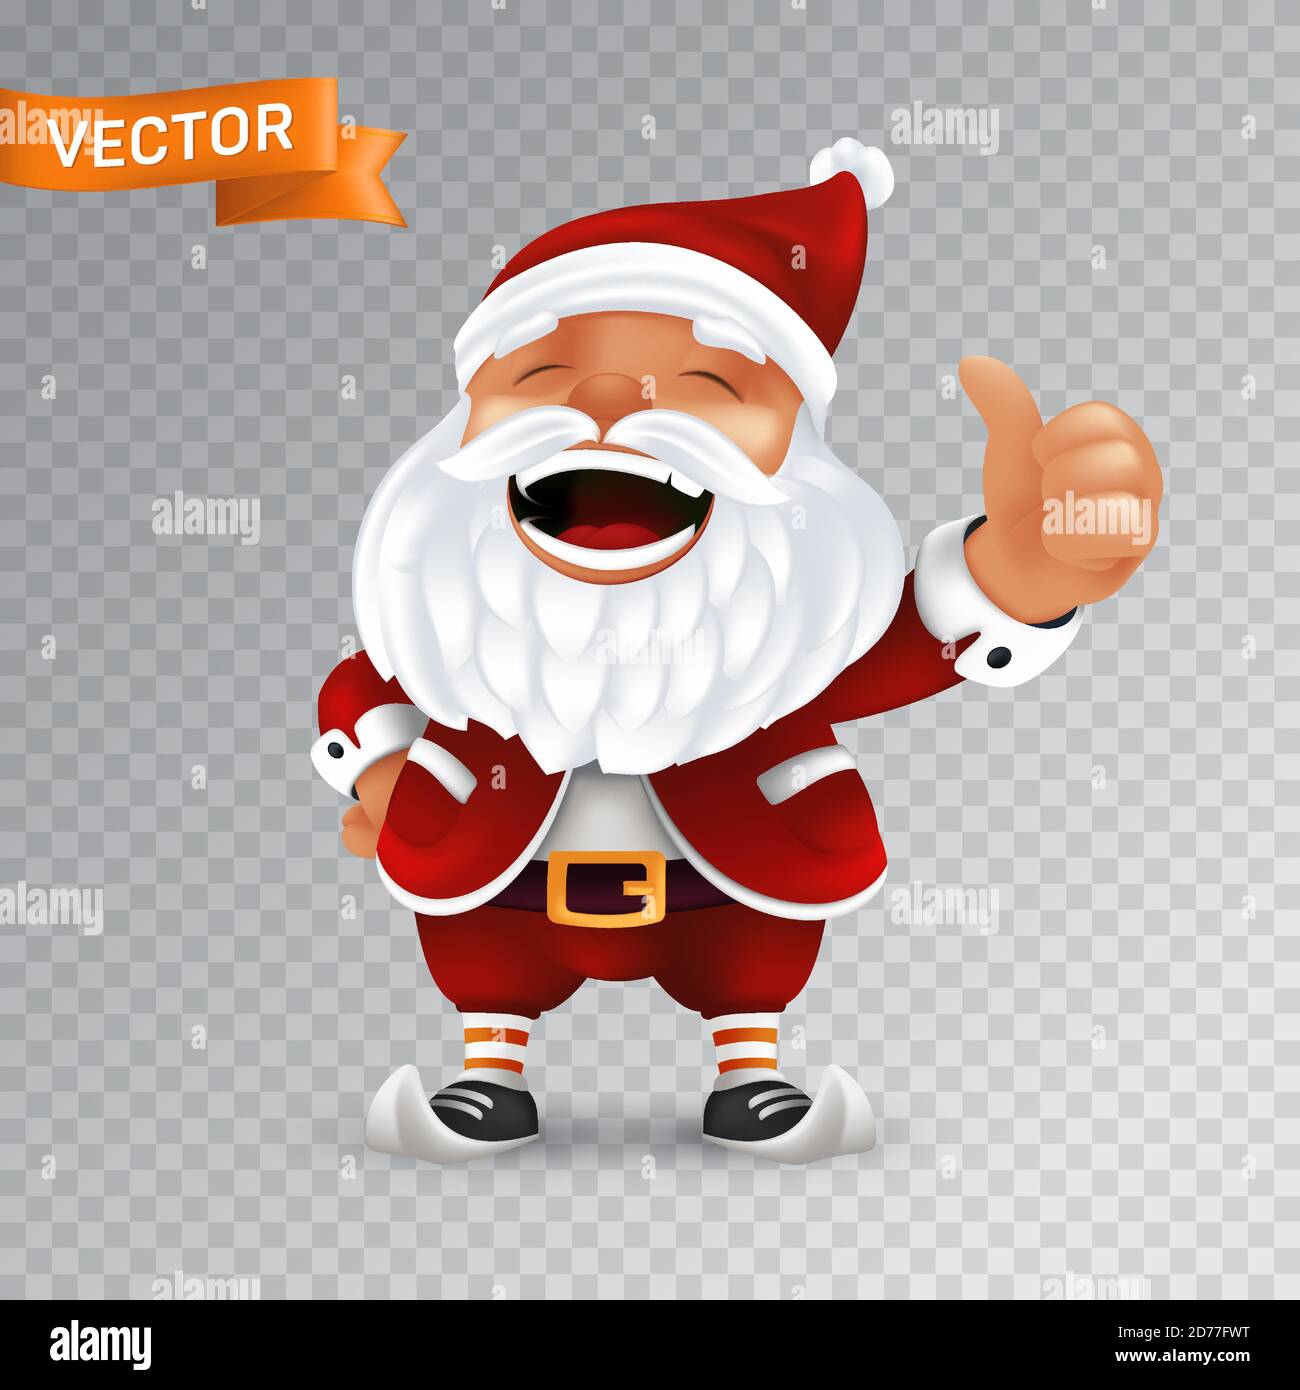 Divertente cartoon piccola mascotte di Babbo Natale senza occhiali in un cappello rosso con i pollici in su. Immagine vettoriale del carattere ridente con barba bianca iso Illustrazione Vettoriale